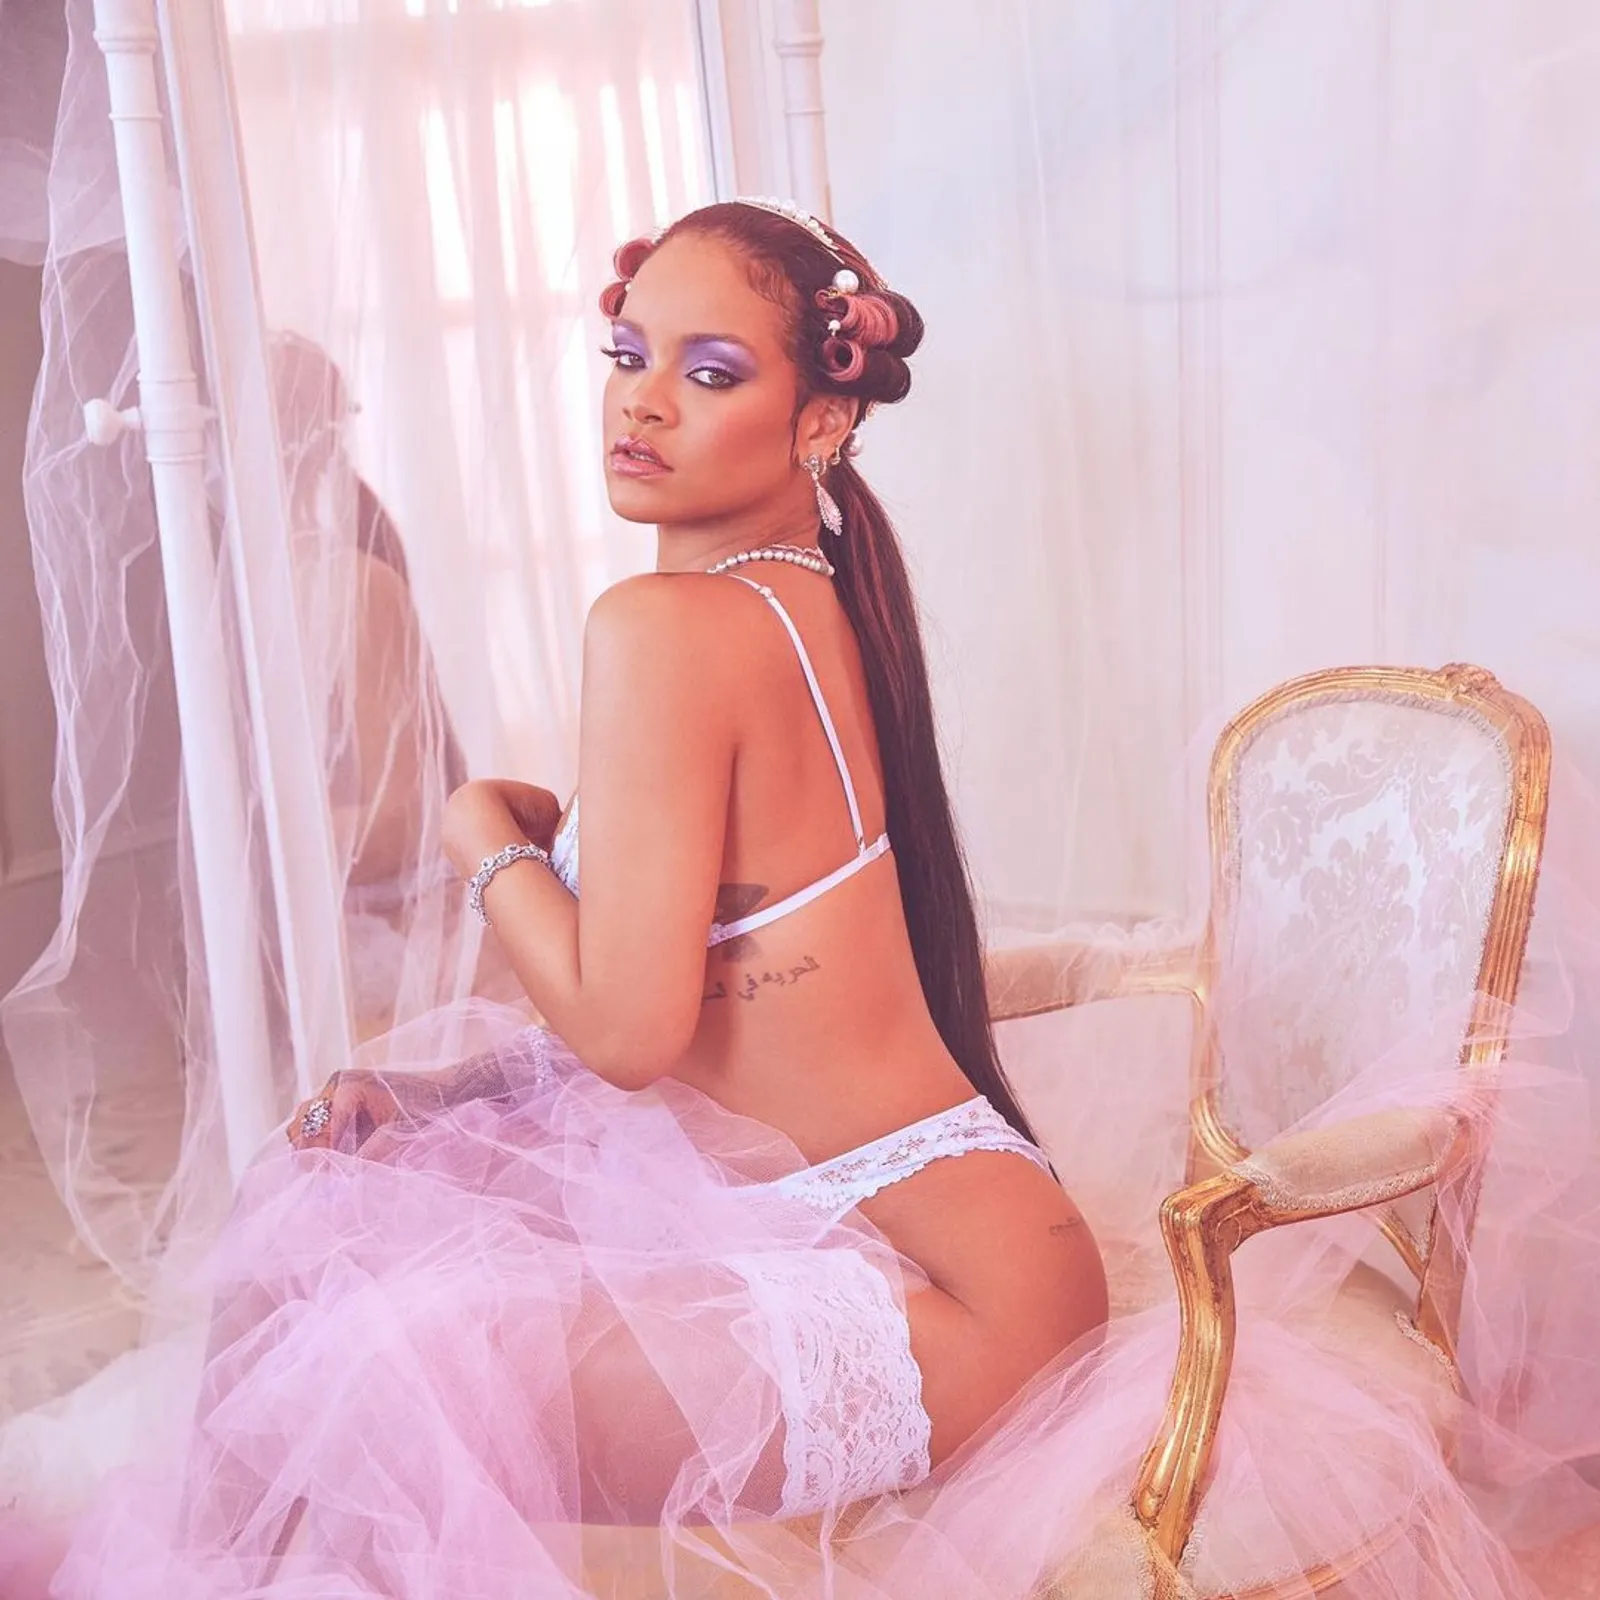 Semakin Seksi, Intip Pemotretan Pakaian Dalam Rihanna Setiap Temanya